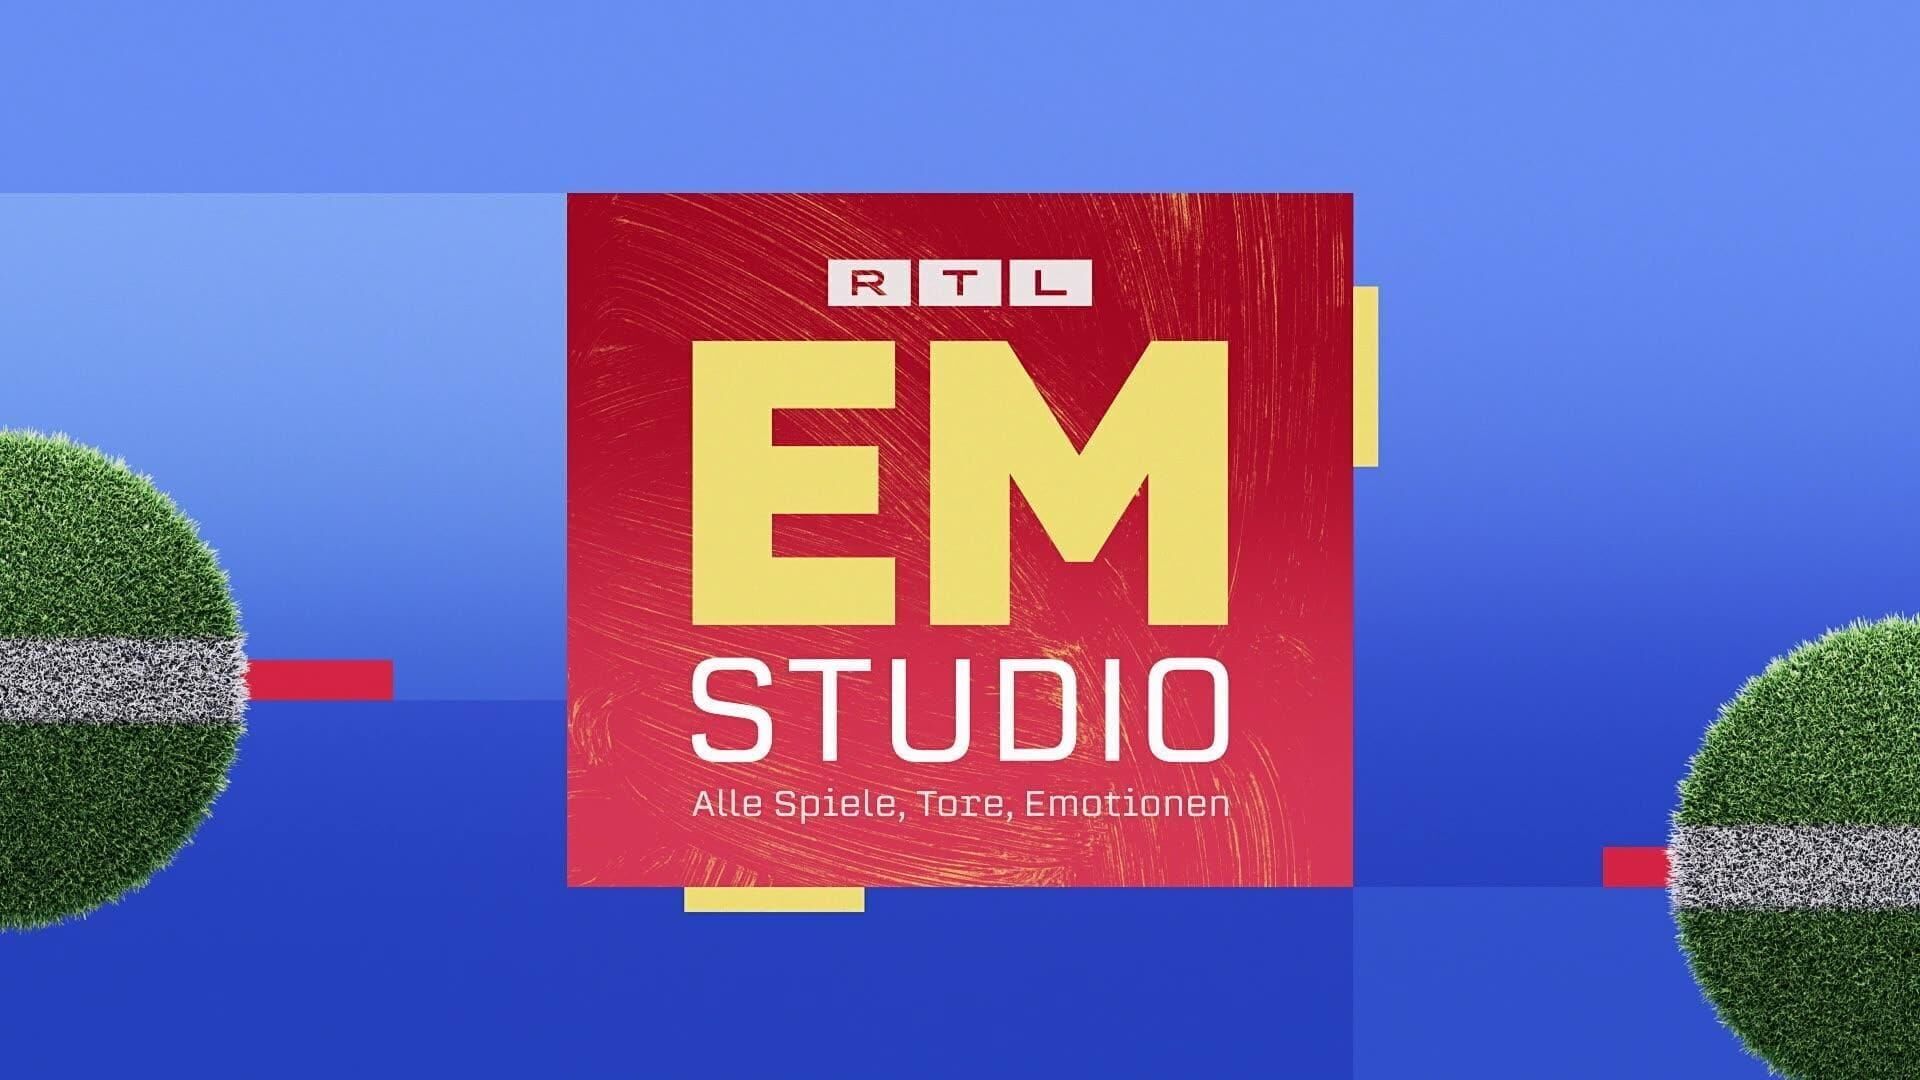 Das RTL EM-Studio – Alle Spiele, Tore, Emotionen